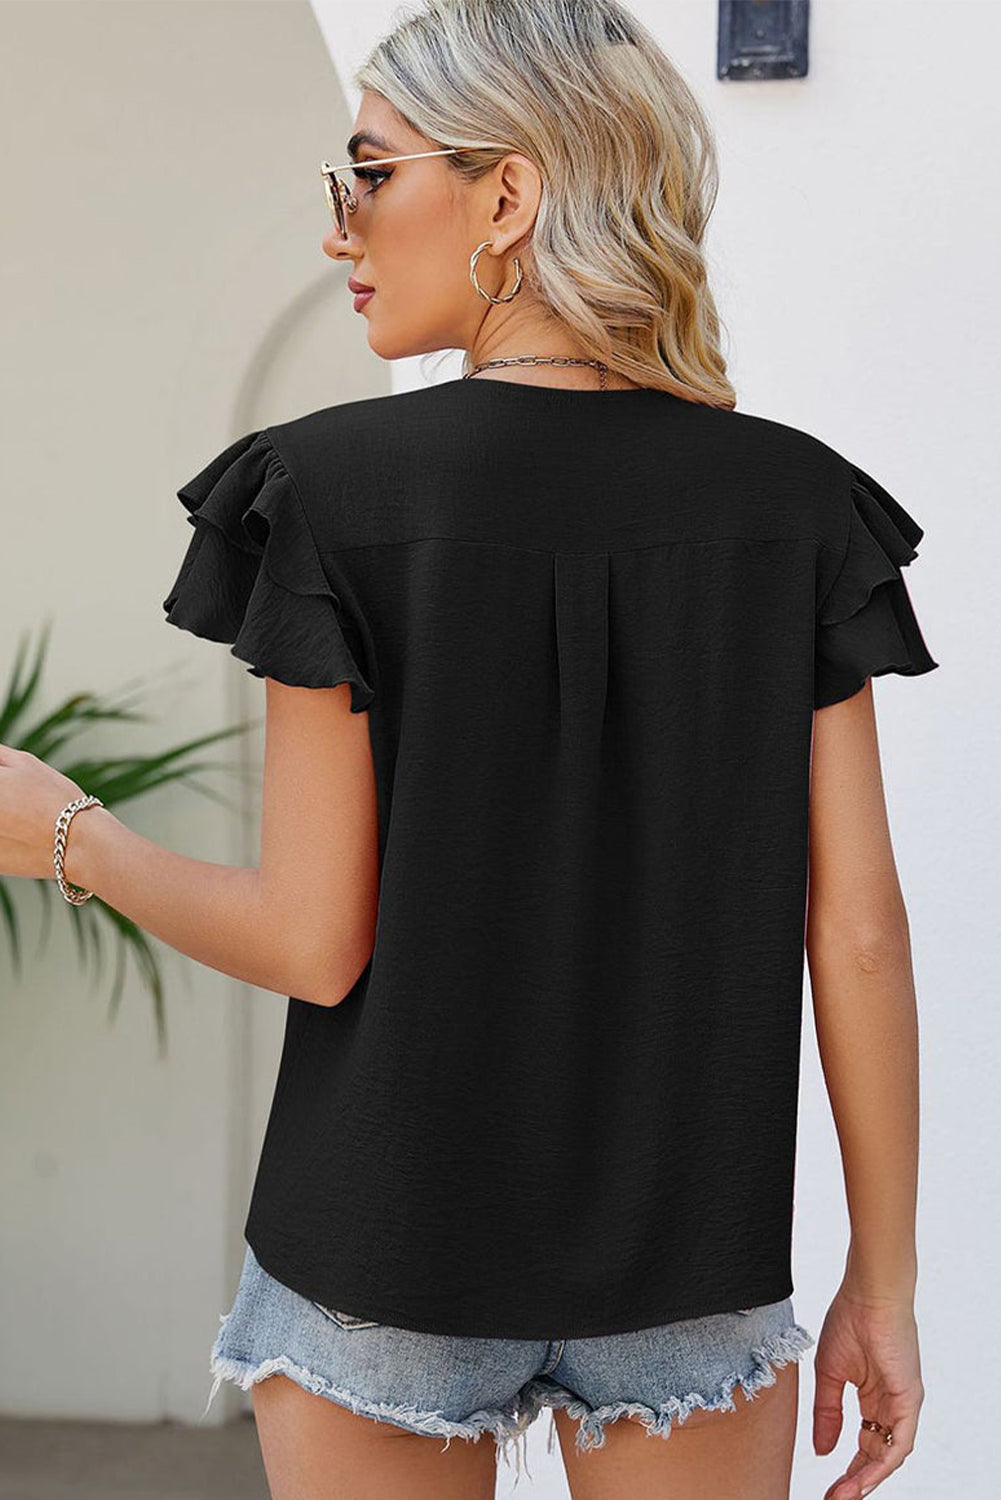 Crna bluza veće veličine kratkih rukava s V izrezom i naborima